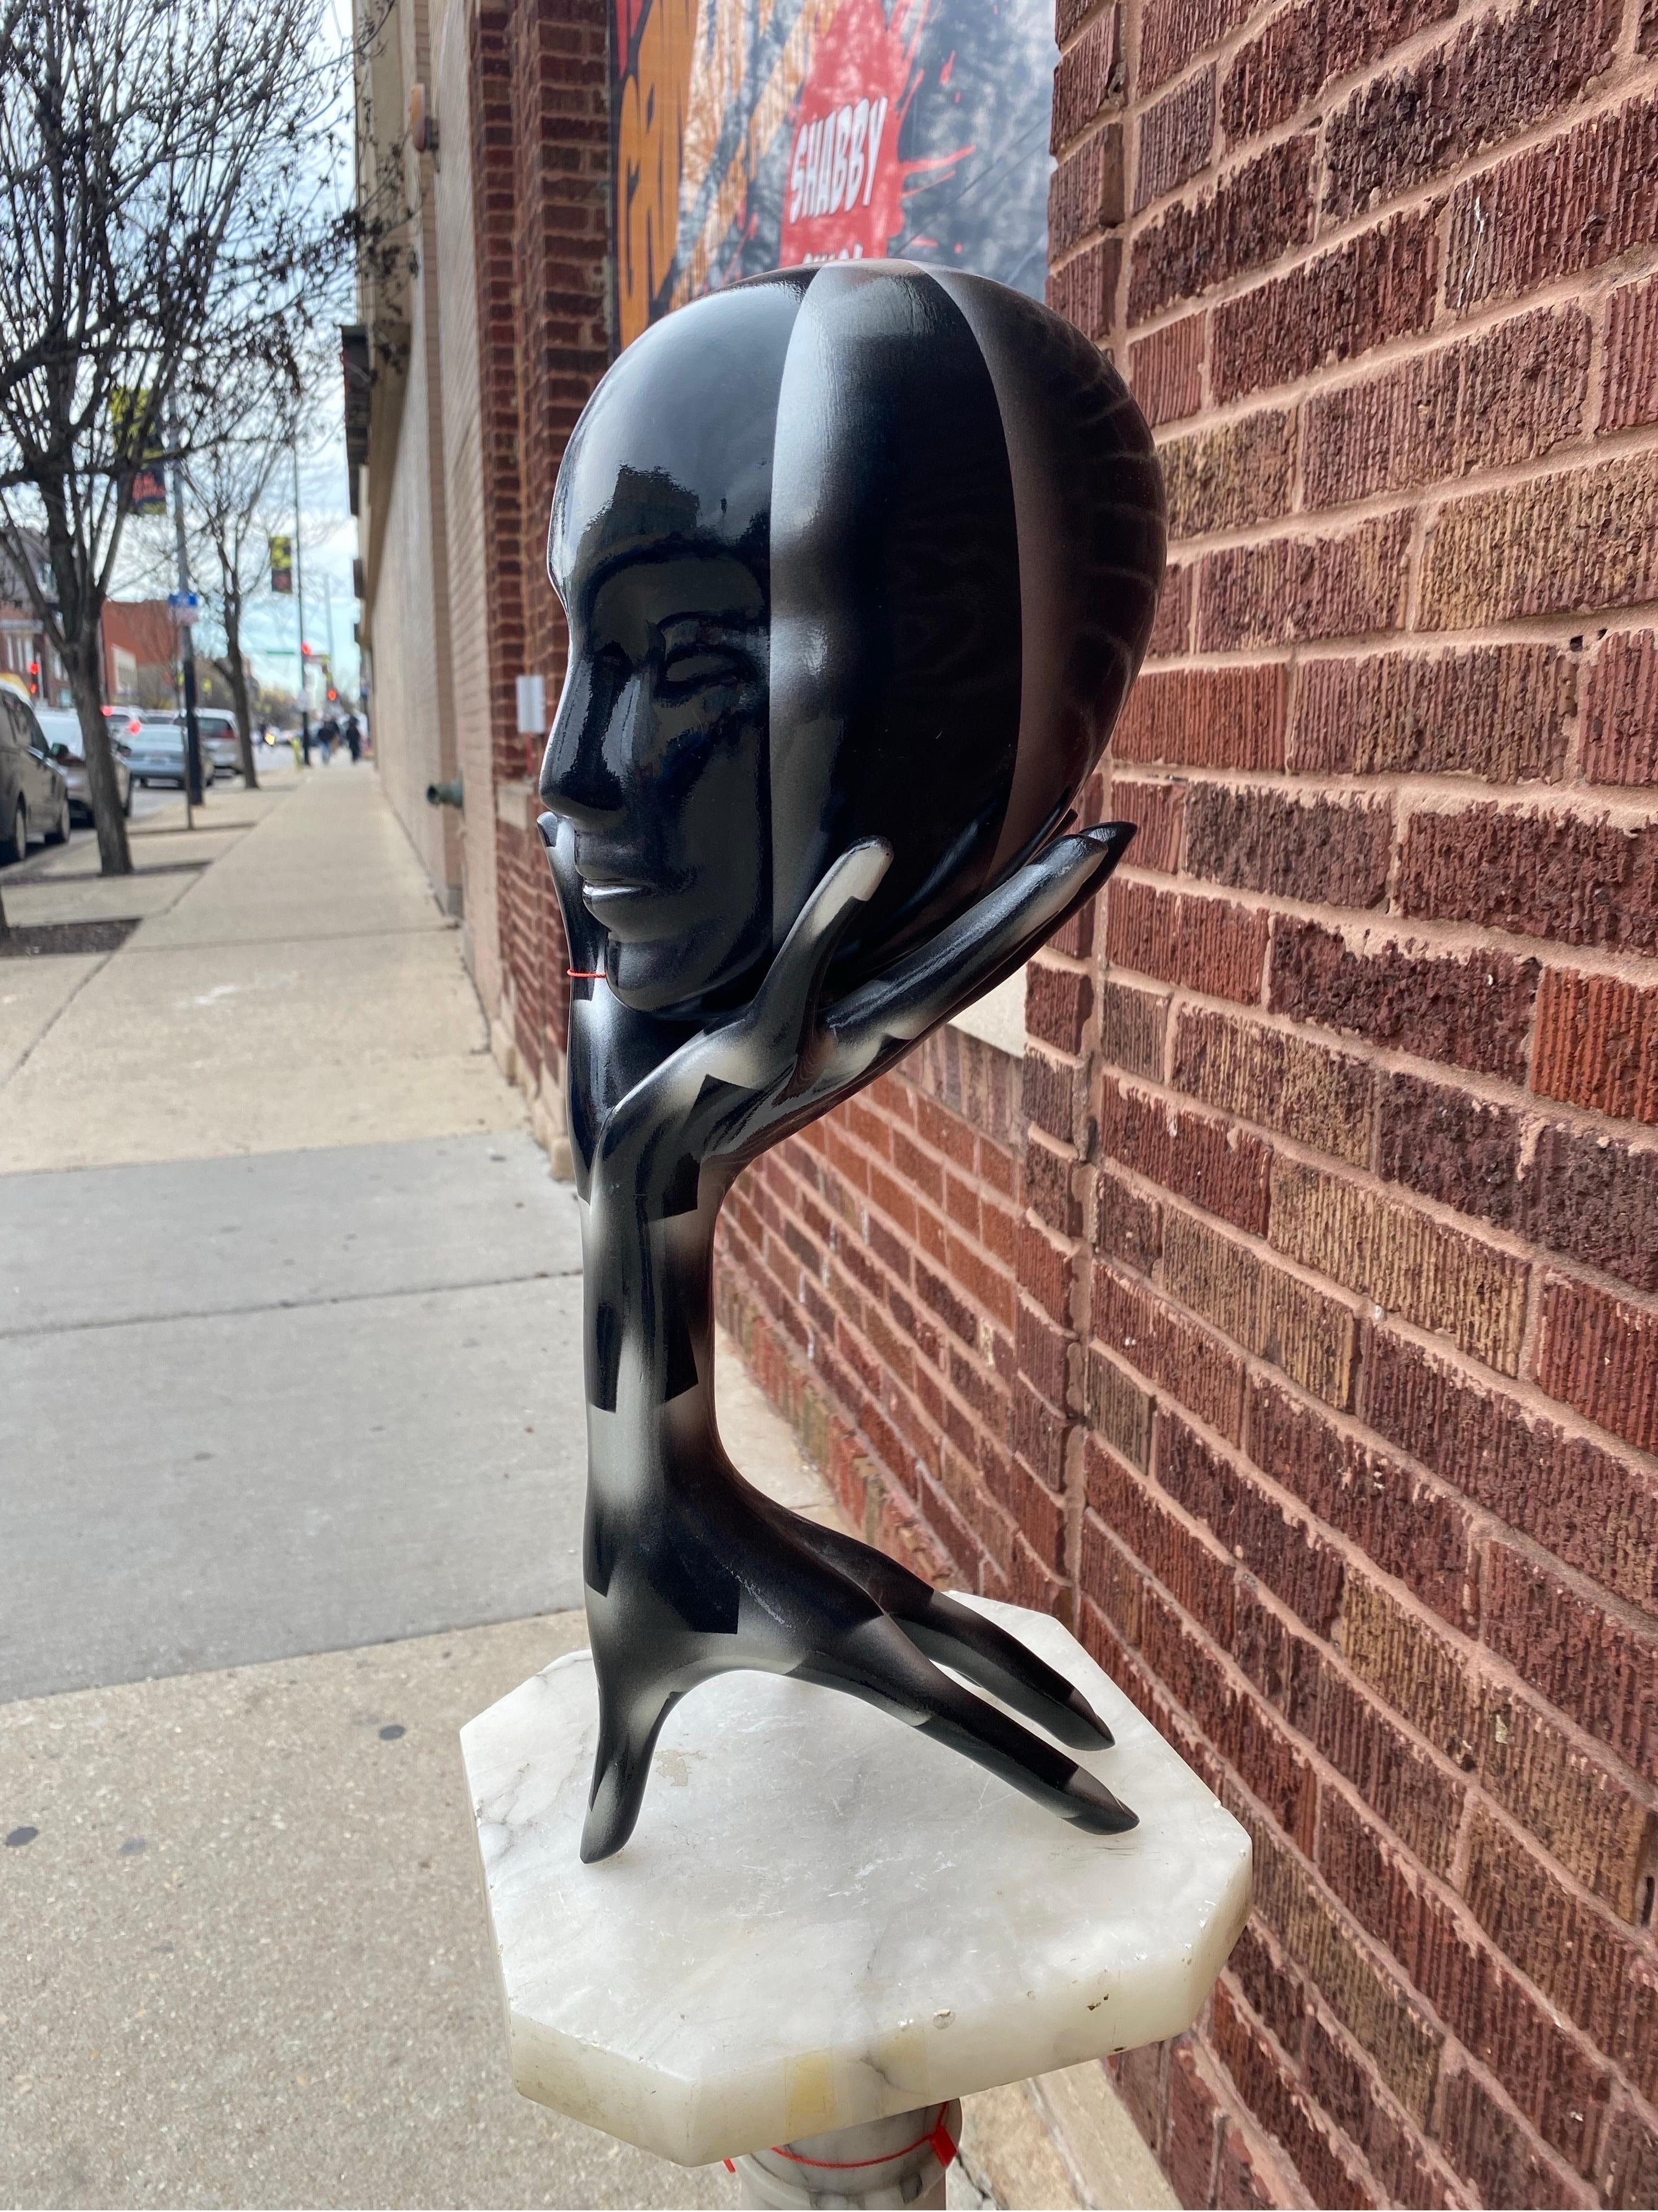 Kopf-in-der-Hand 1990er Jahre Kurze Skulptur in Schwarz und Silber

Diese schlichte, schwarz und silbern lackierte Holzskulptur zeigt einen Arm mit einer ausgestreckten Hand an beiden Enden. Ein Kopf balanciert auf den Fingerspitzen der Hand. Der